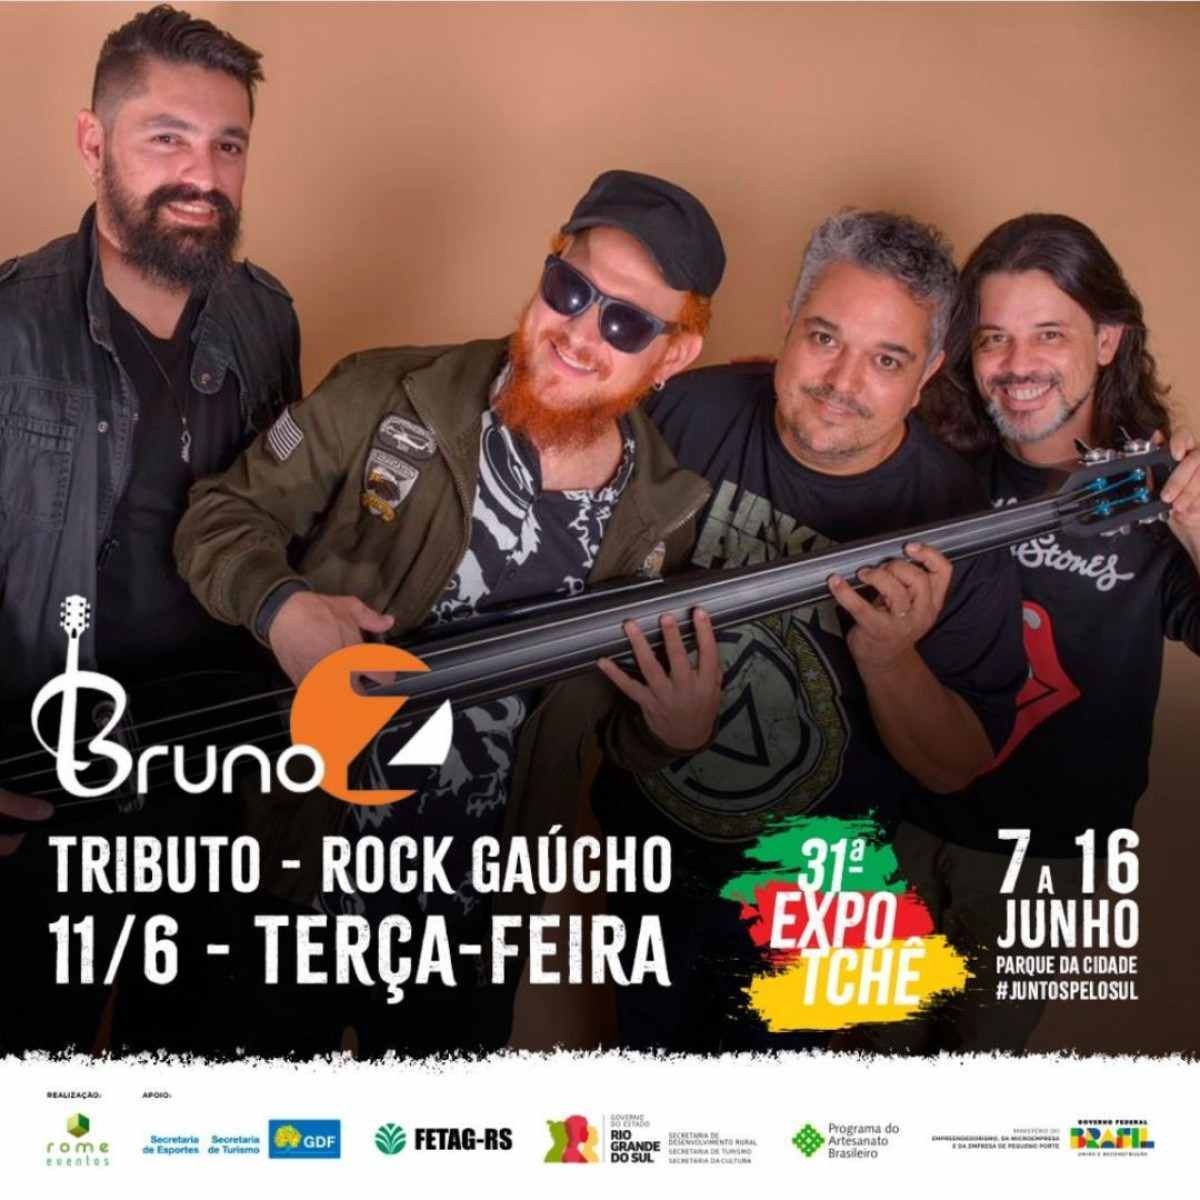 A 31ª edição da Expotchê recebe Bruno Z com Tributo ao Rock Gaúcho